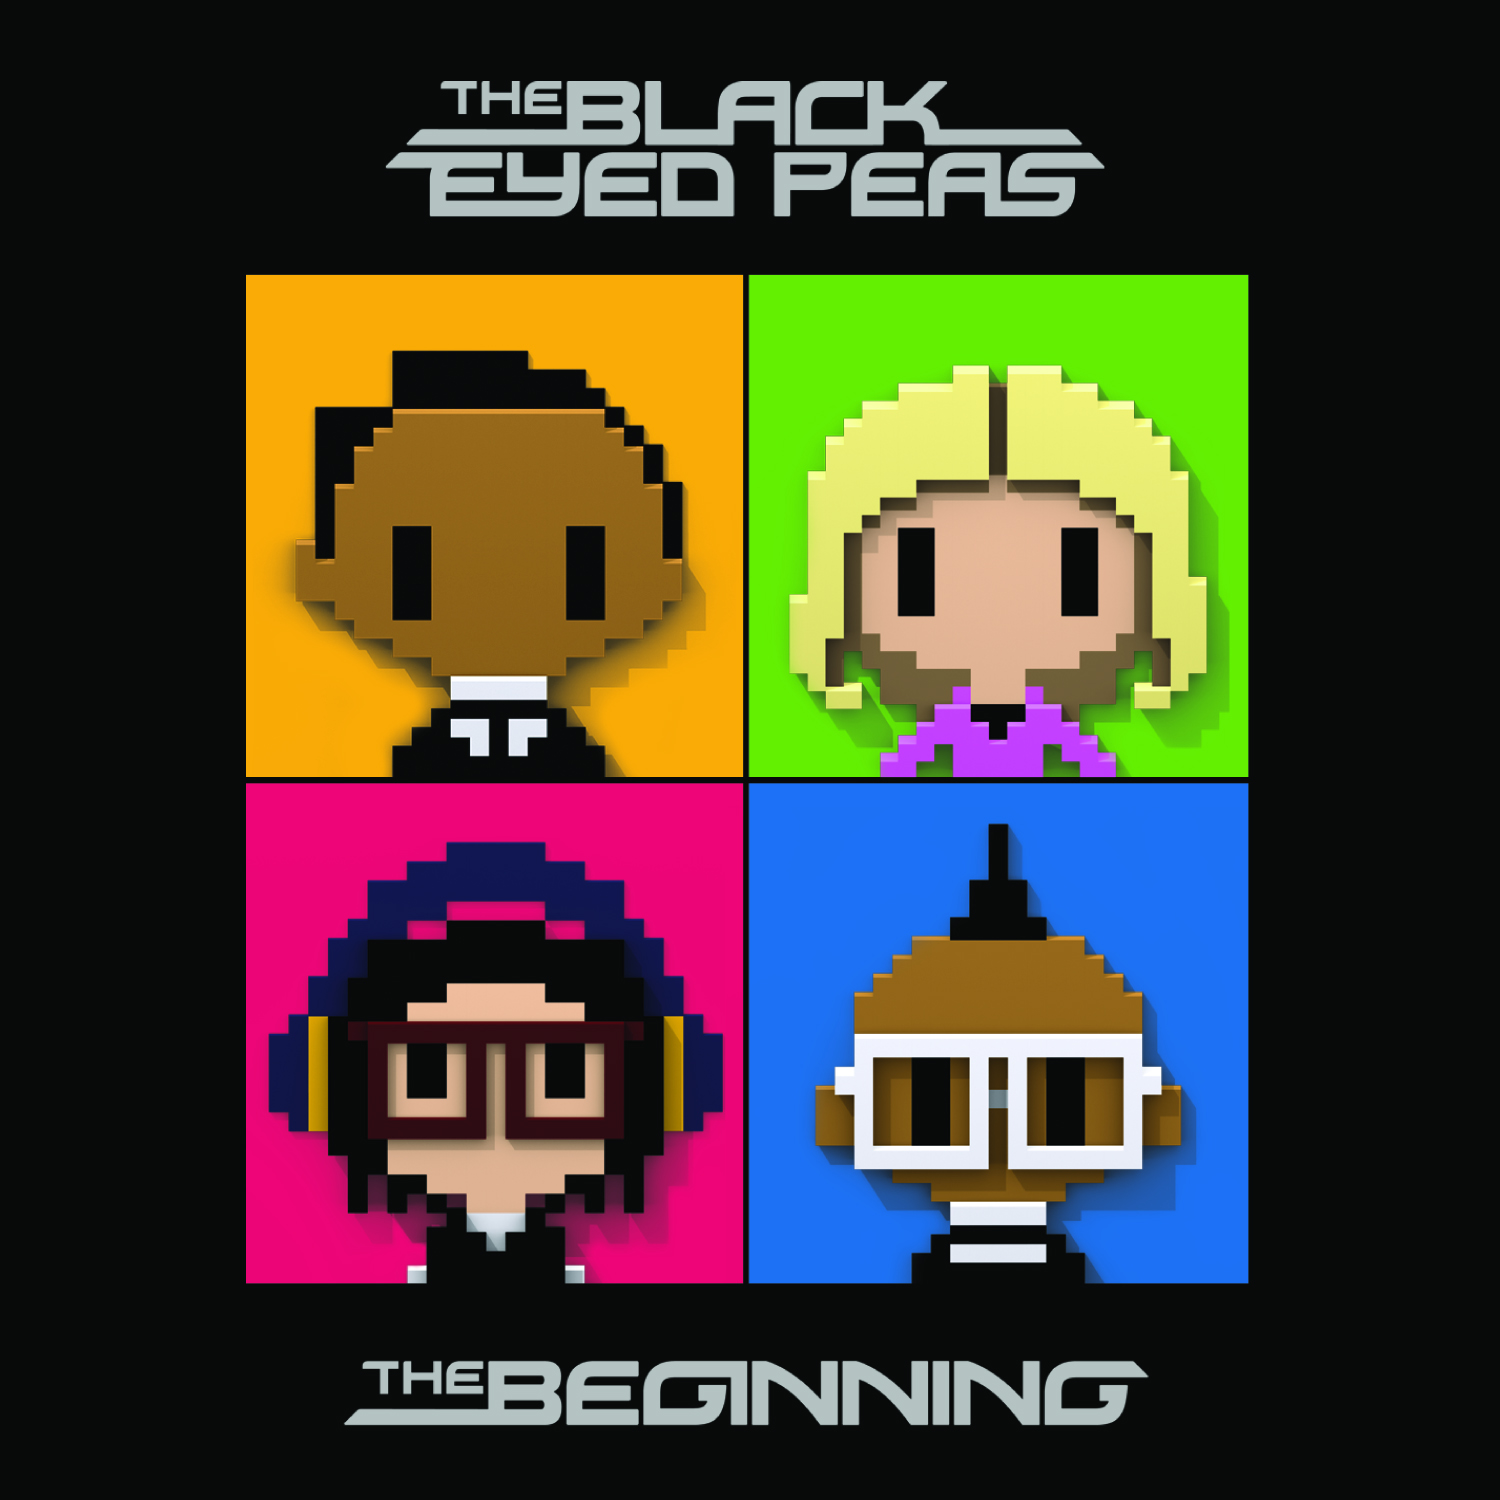 The Black Eyed Peas Megaupload 82